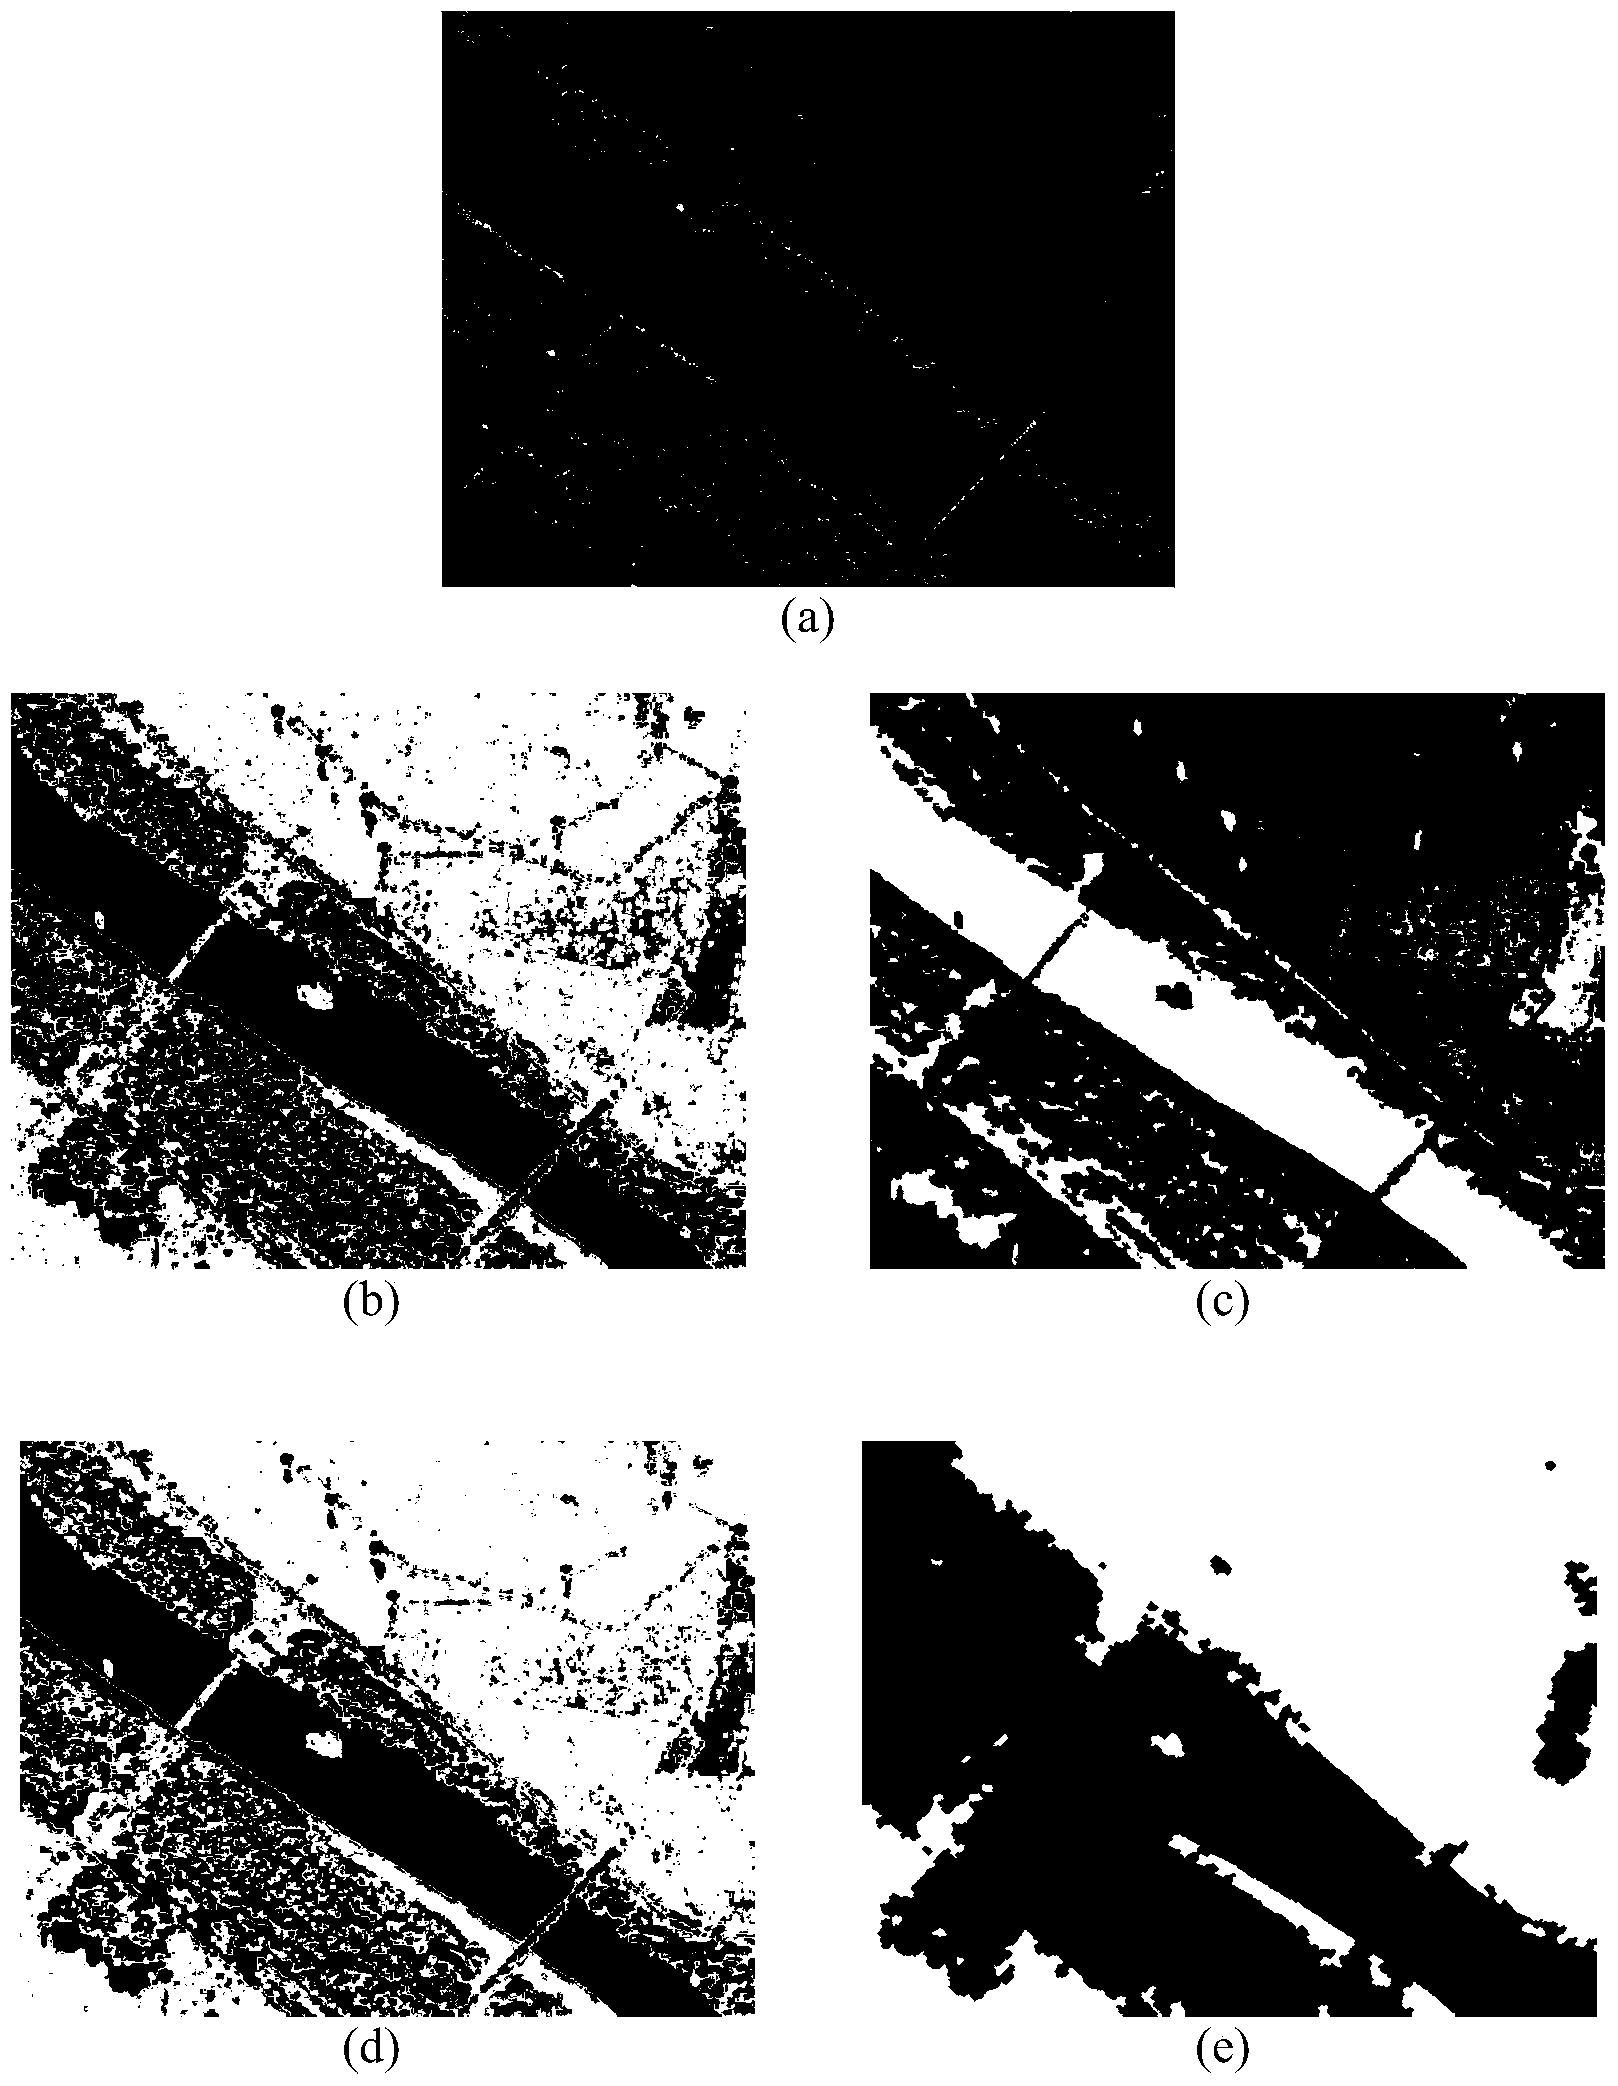 SAR image segmentation method based on superpixels and optimizing strategy